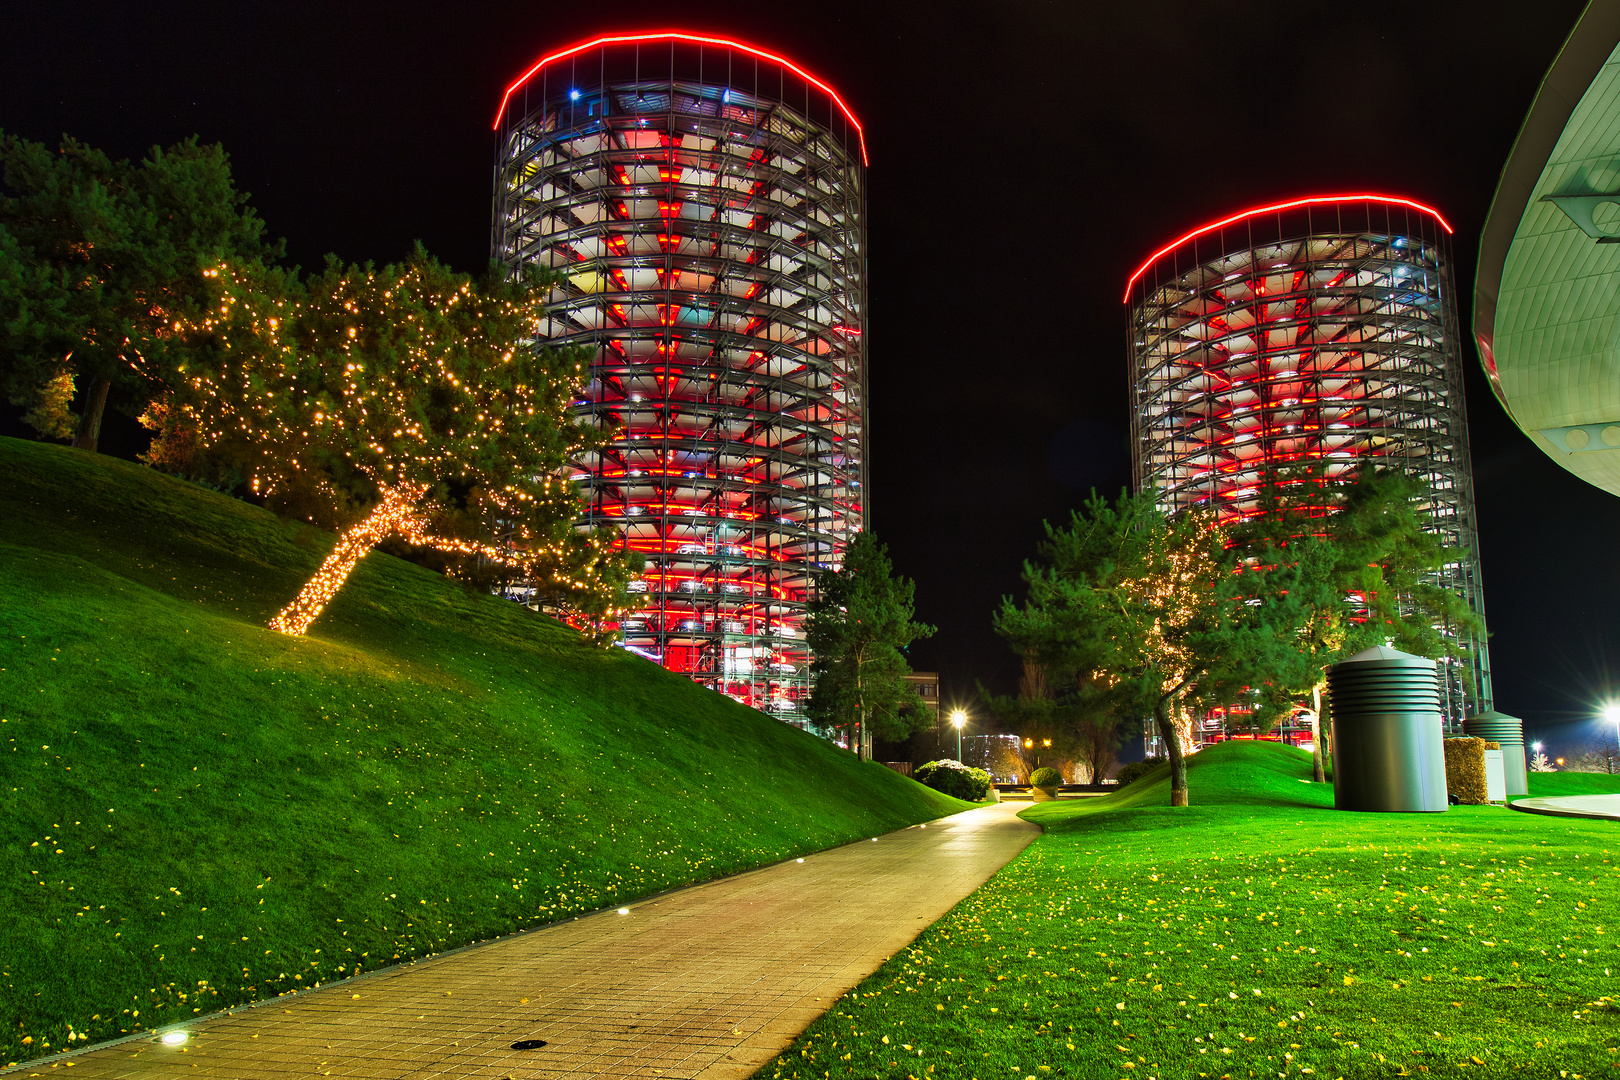 Autotürme der Autostadt Wolfsburg mit Lichterbaum